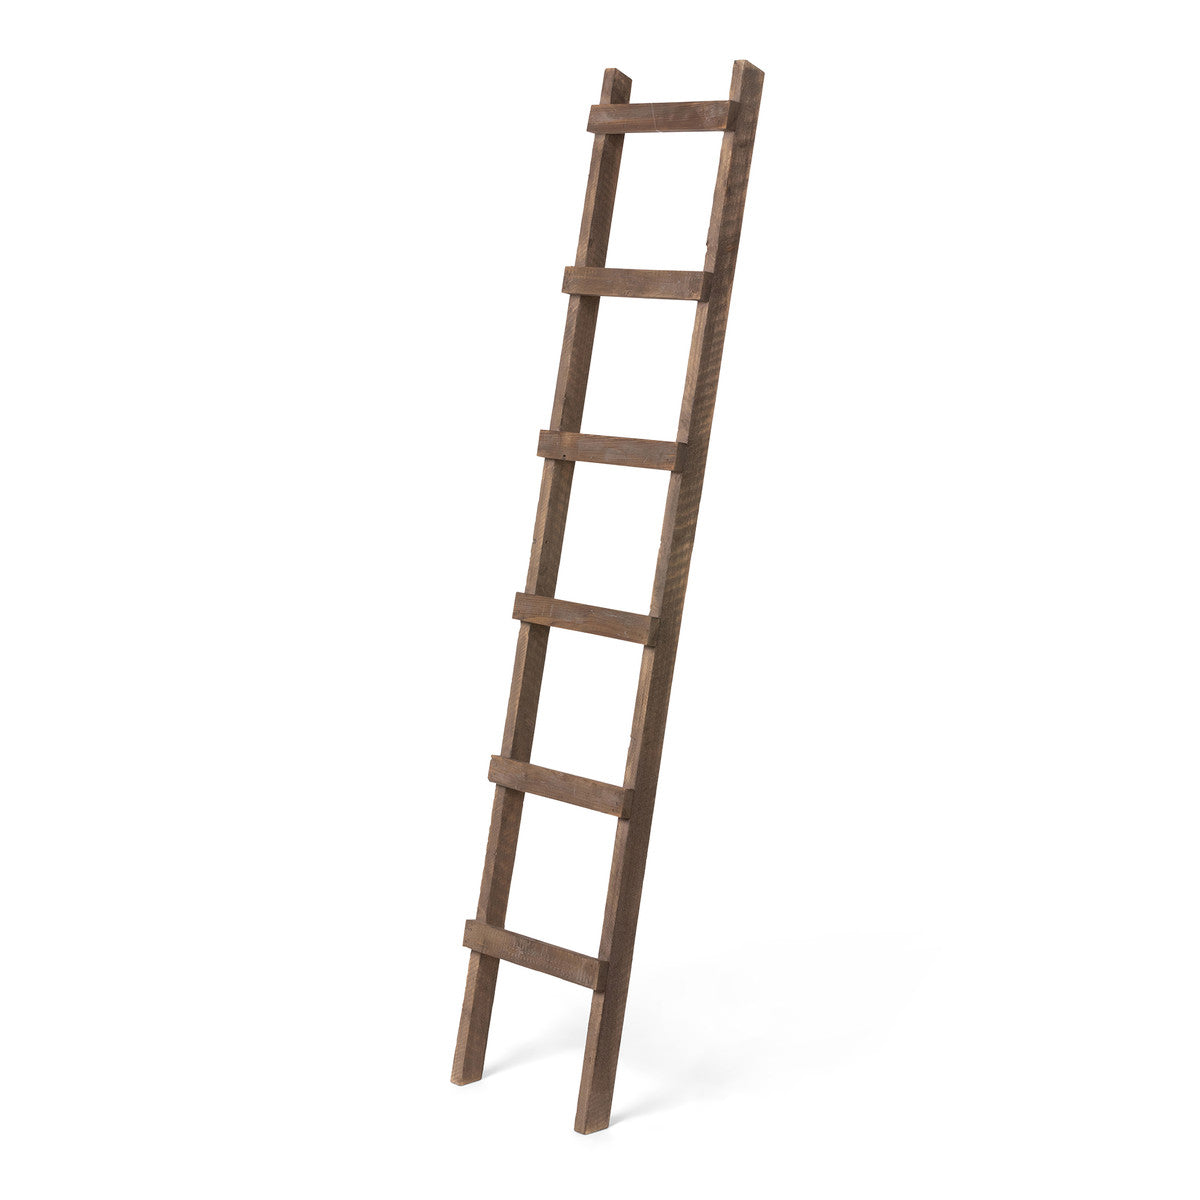 Aged Wood Barn Ladder